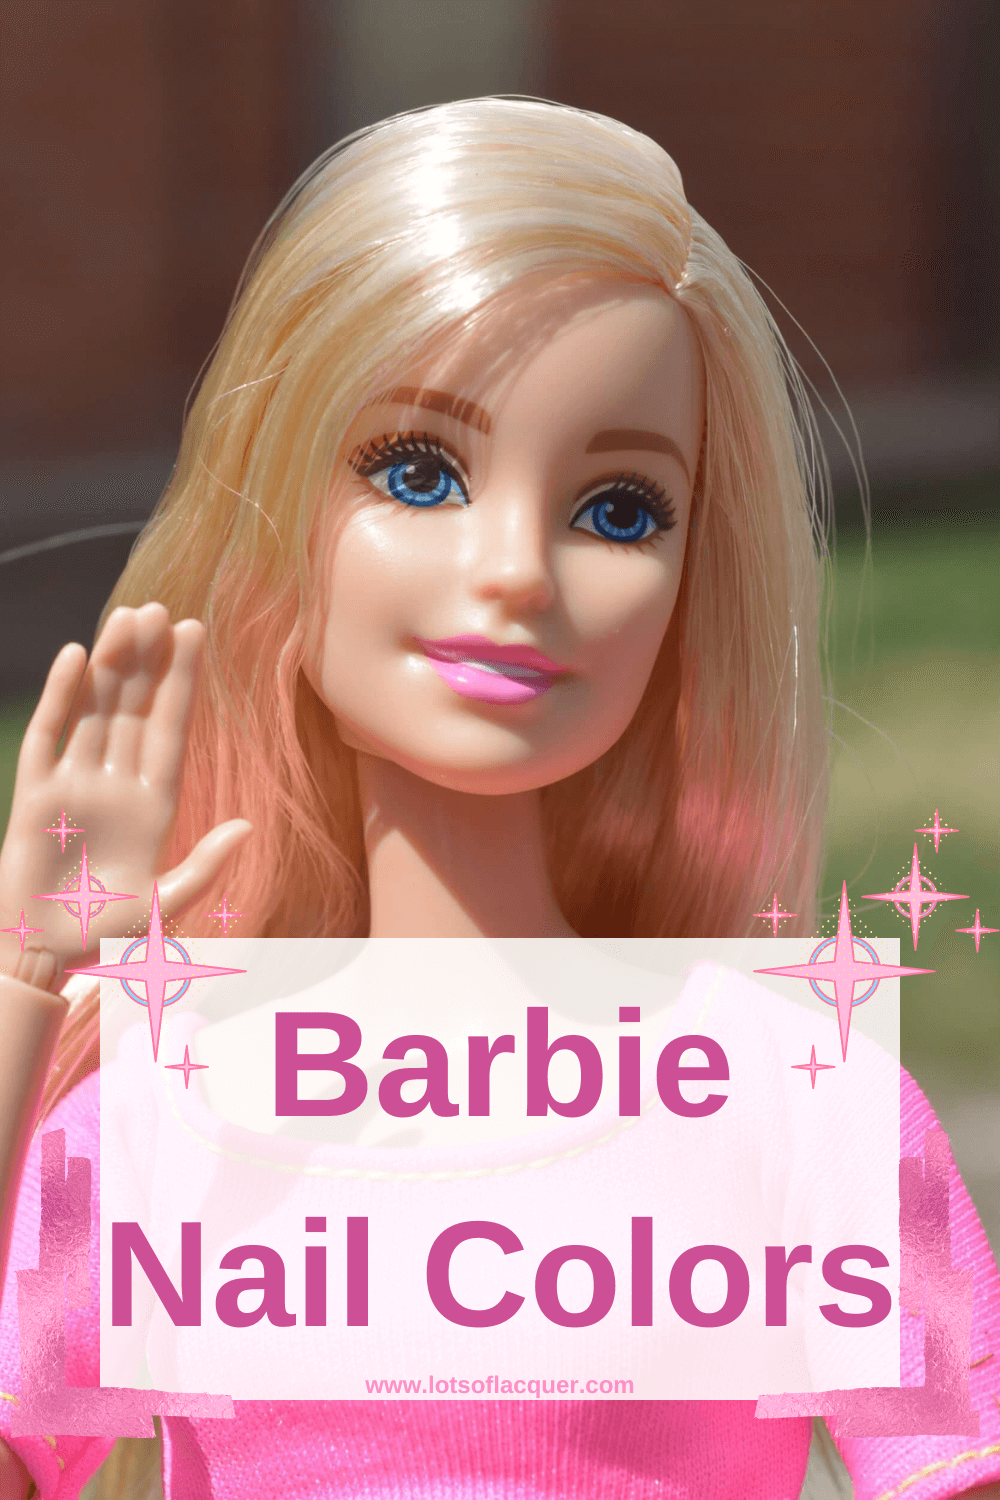 Barbie Nails (@pinkbarbienails) • Instagram photos and videos